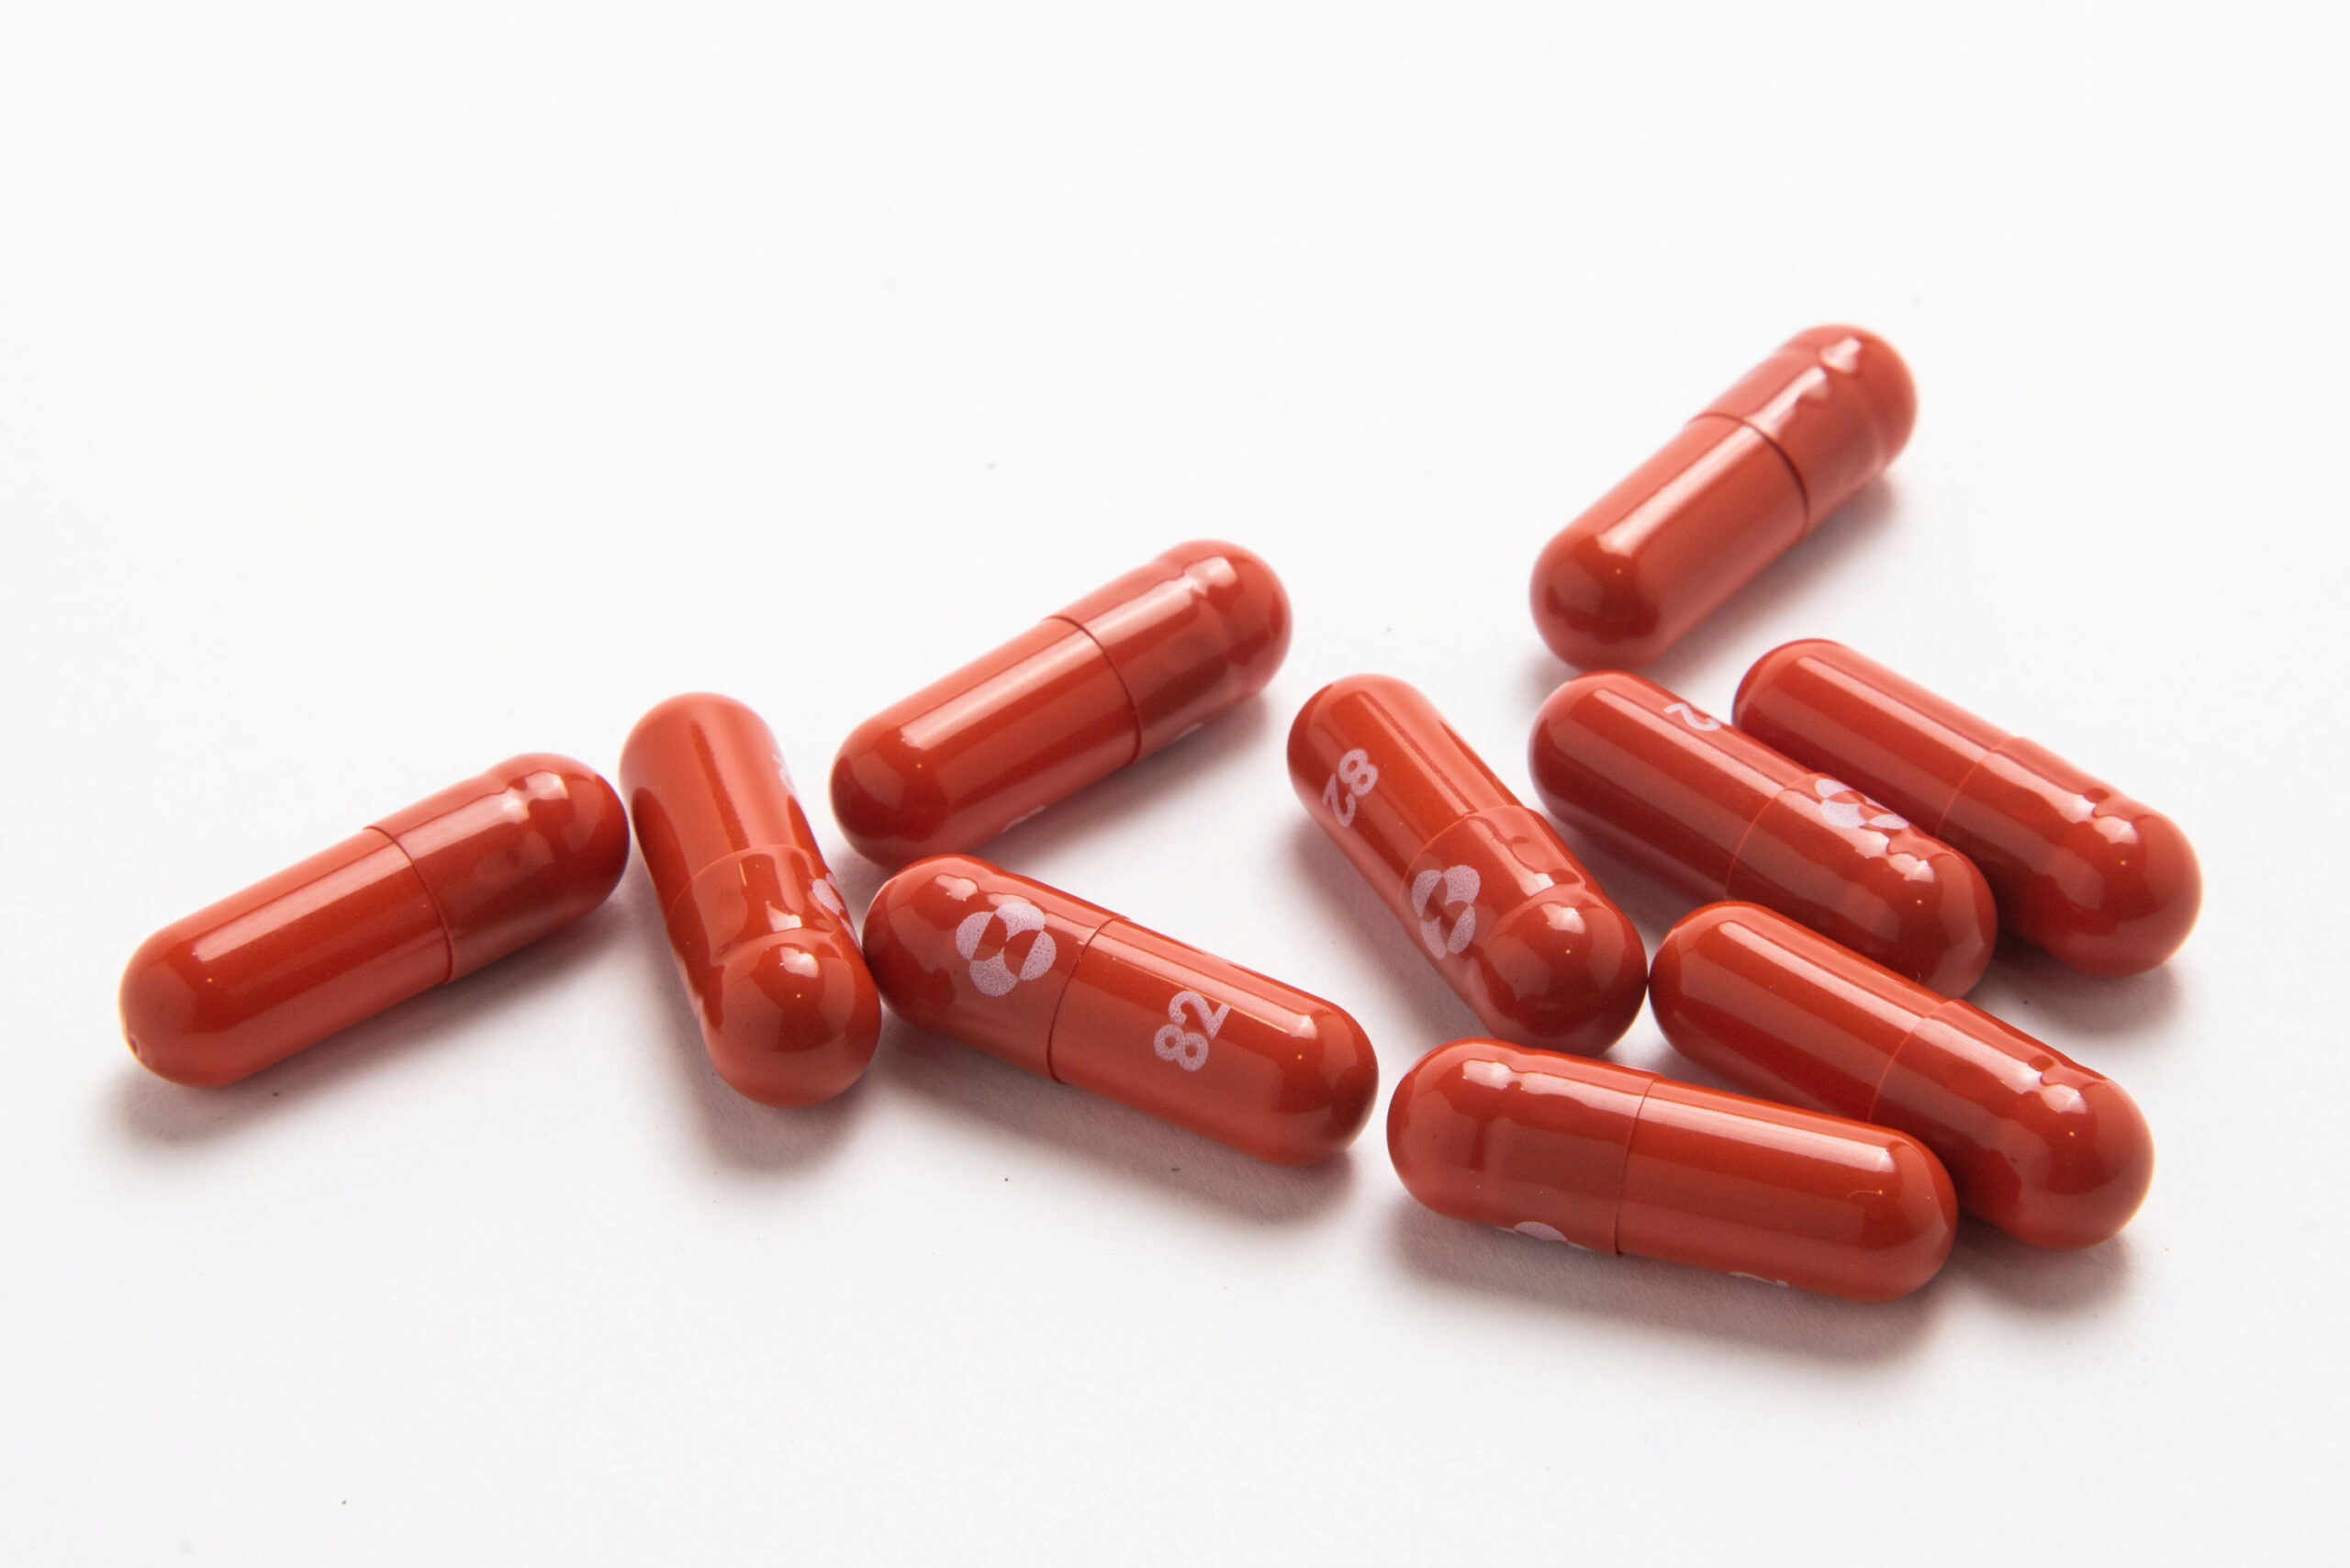 อังกฤษ อนุมัติใช้ยาโมลนูพิราเวียร์รักษาโควิด ประเทศแรกในโลก – ต่างประเทศ